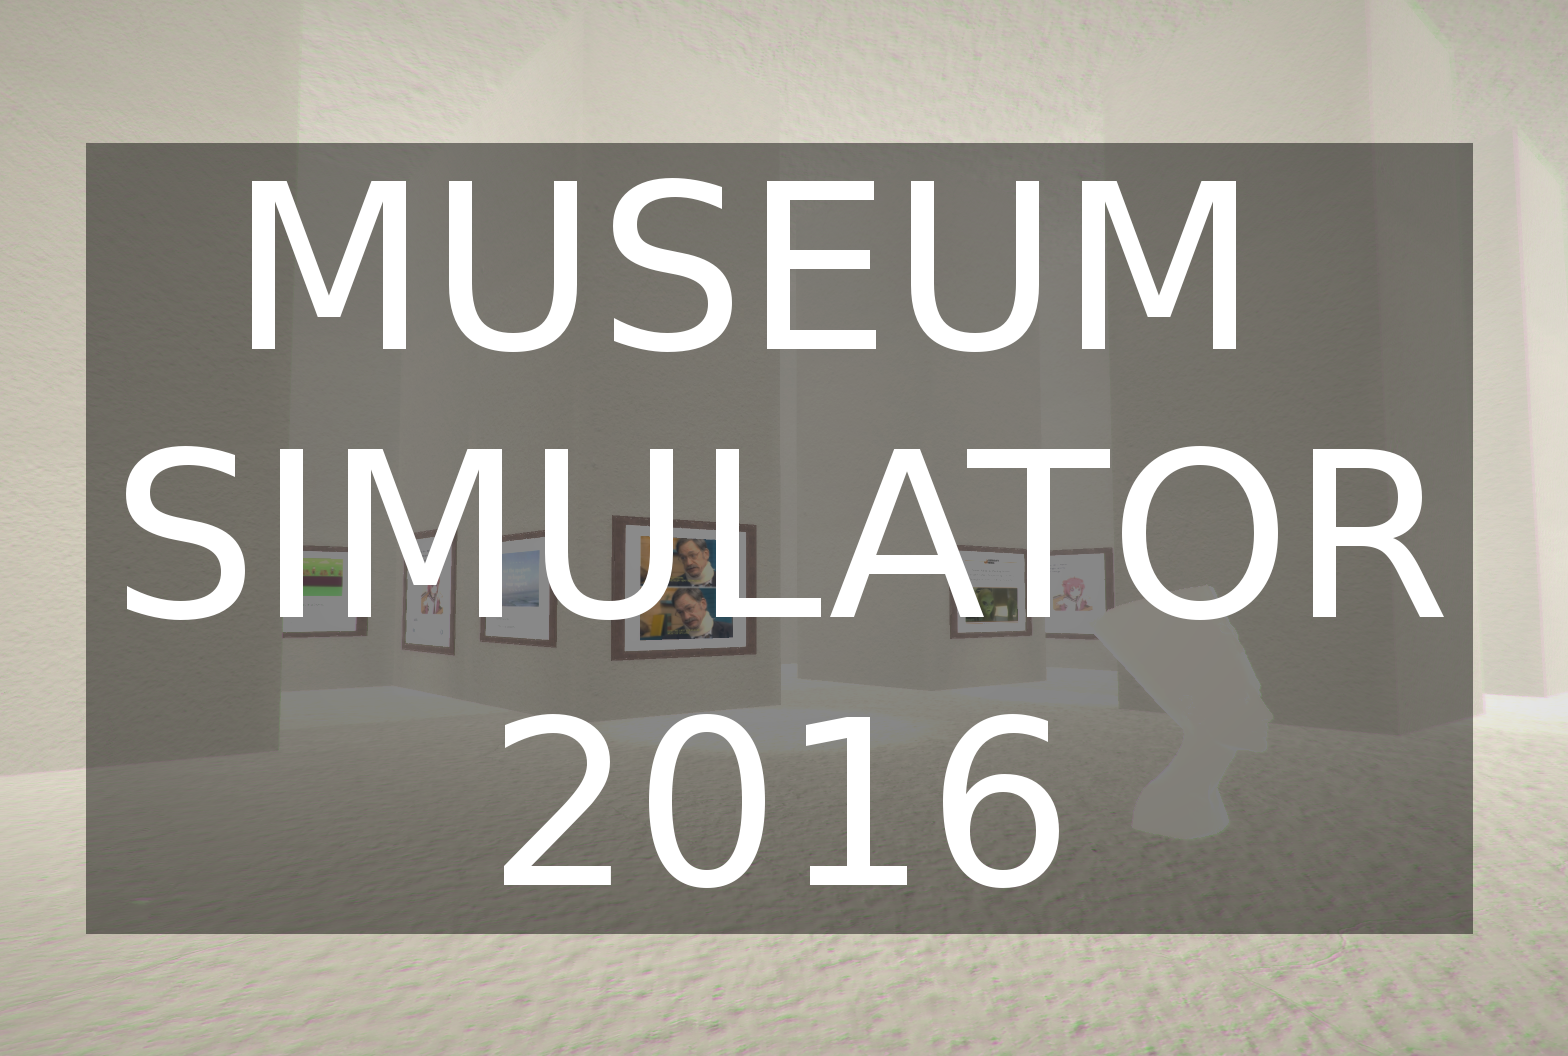 Museum Simulator 2016